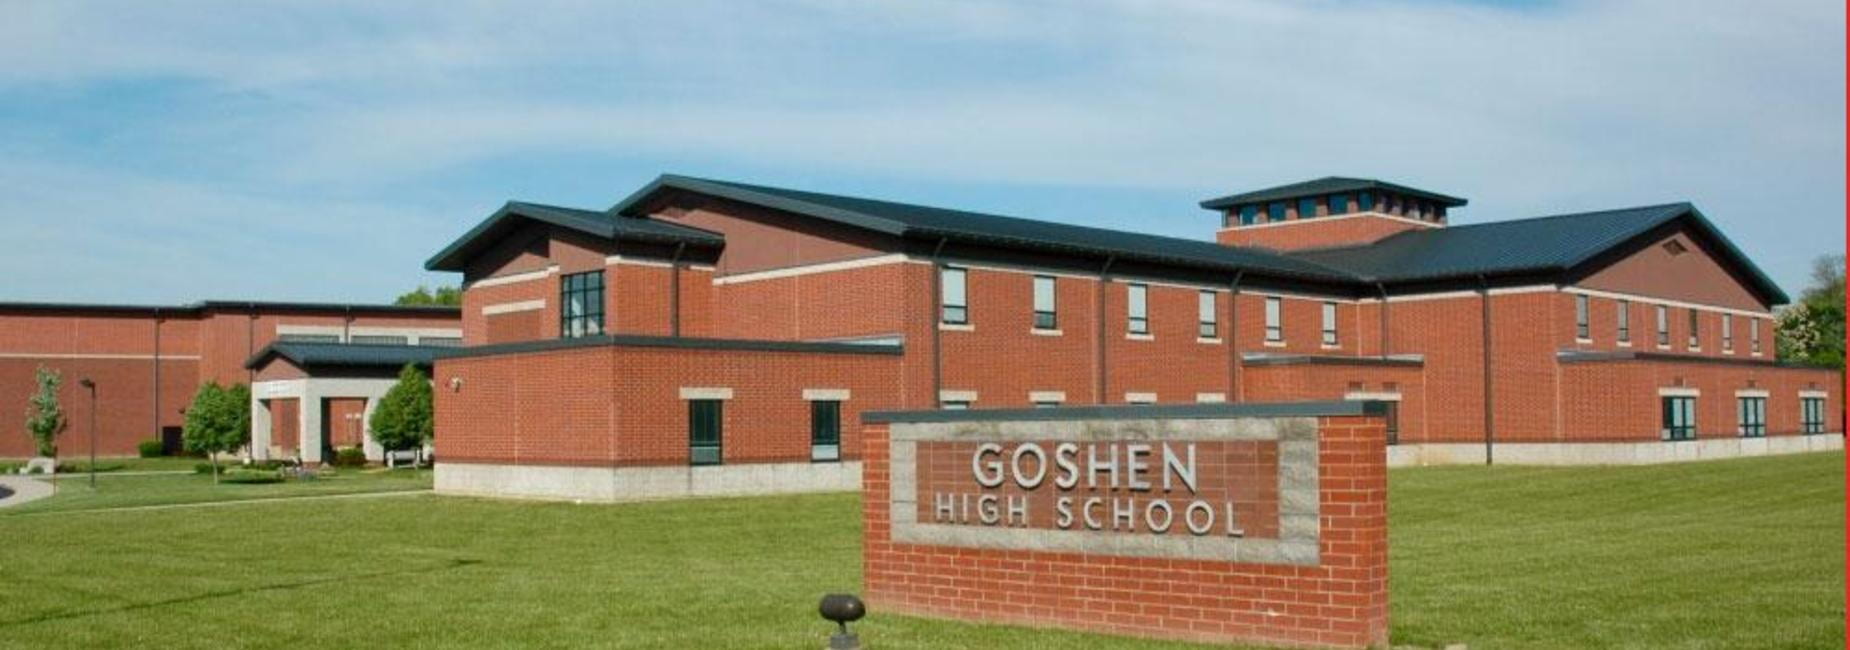 Image from Goshen High School's Website